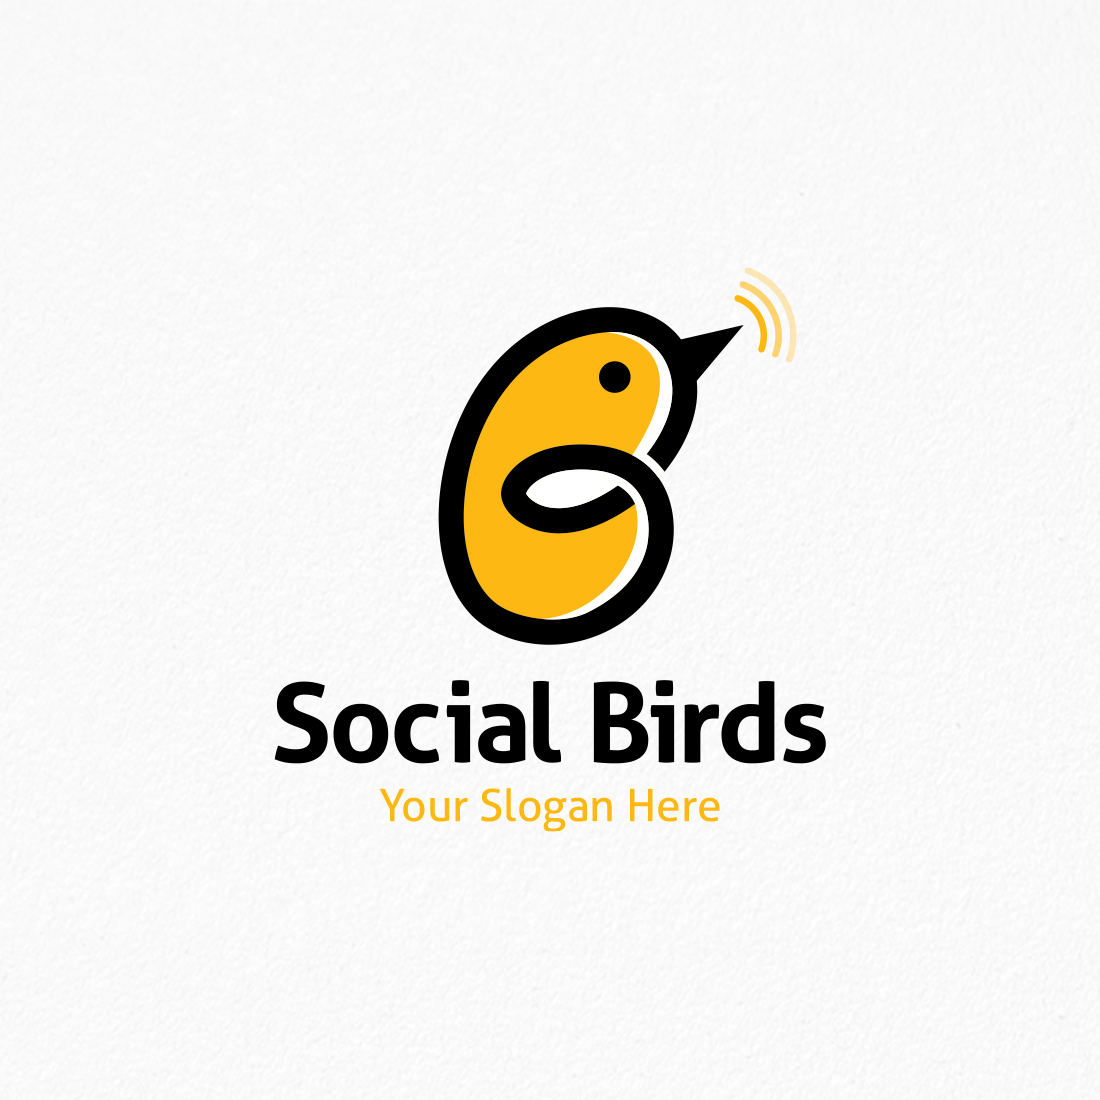 social birds logo 01